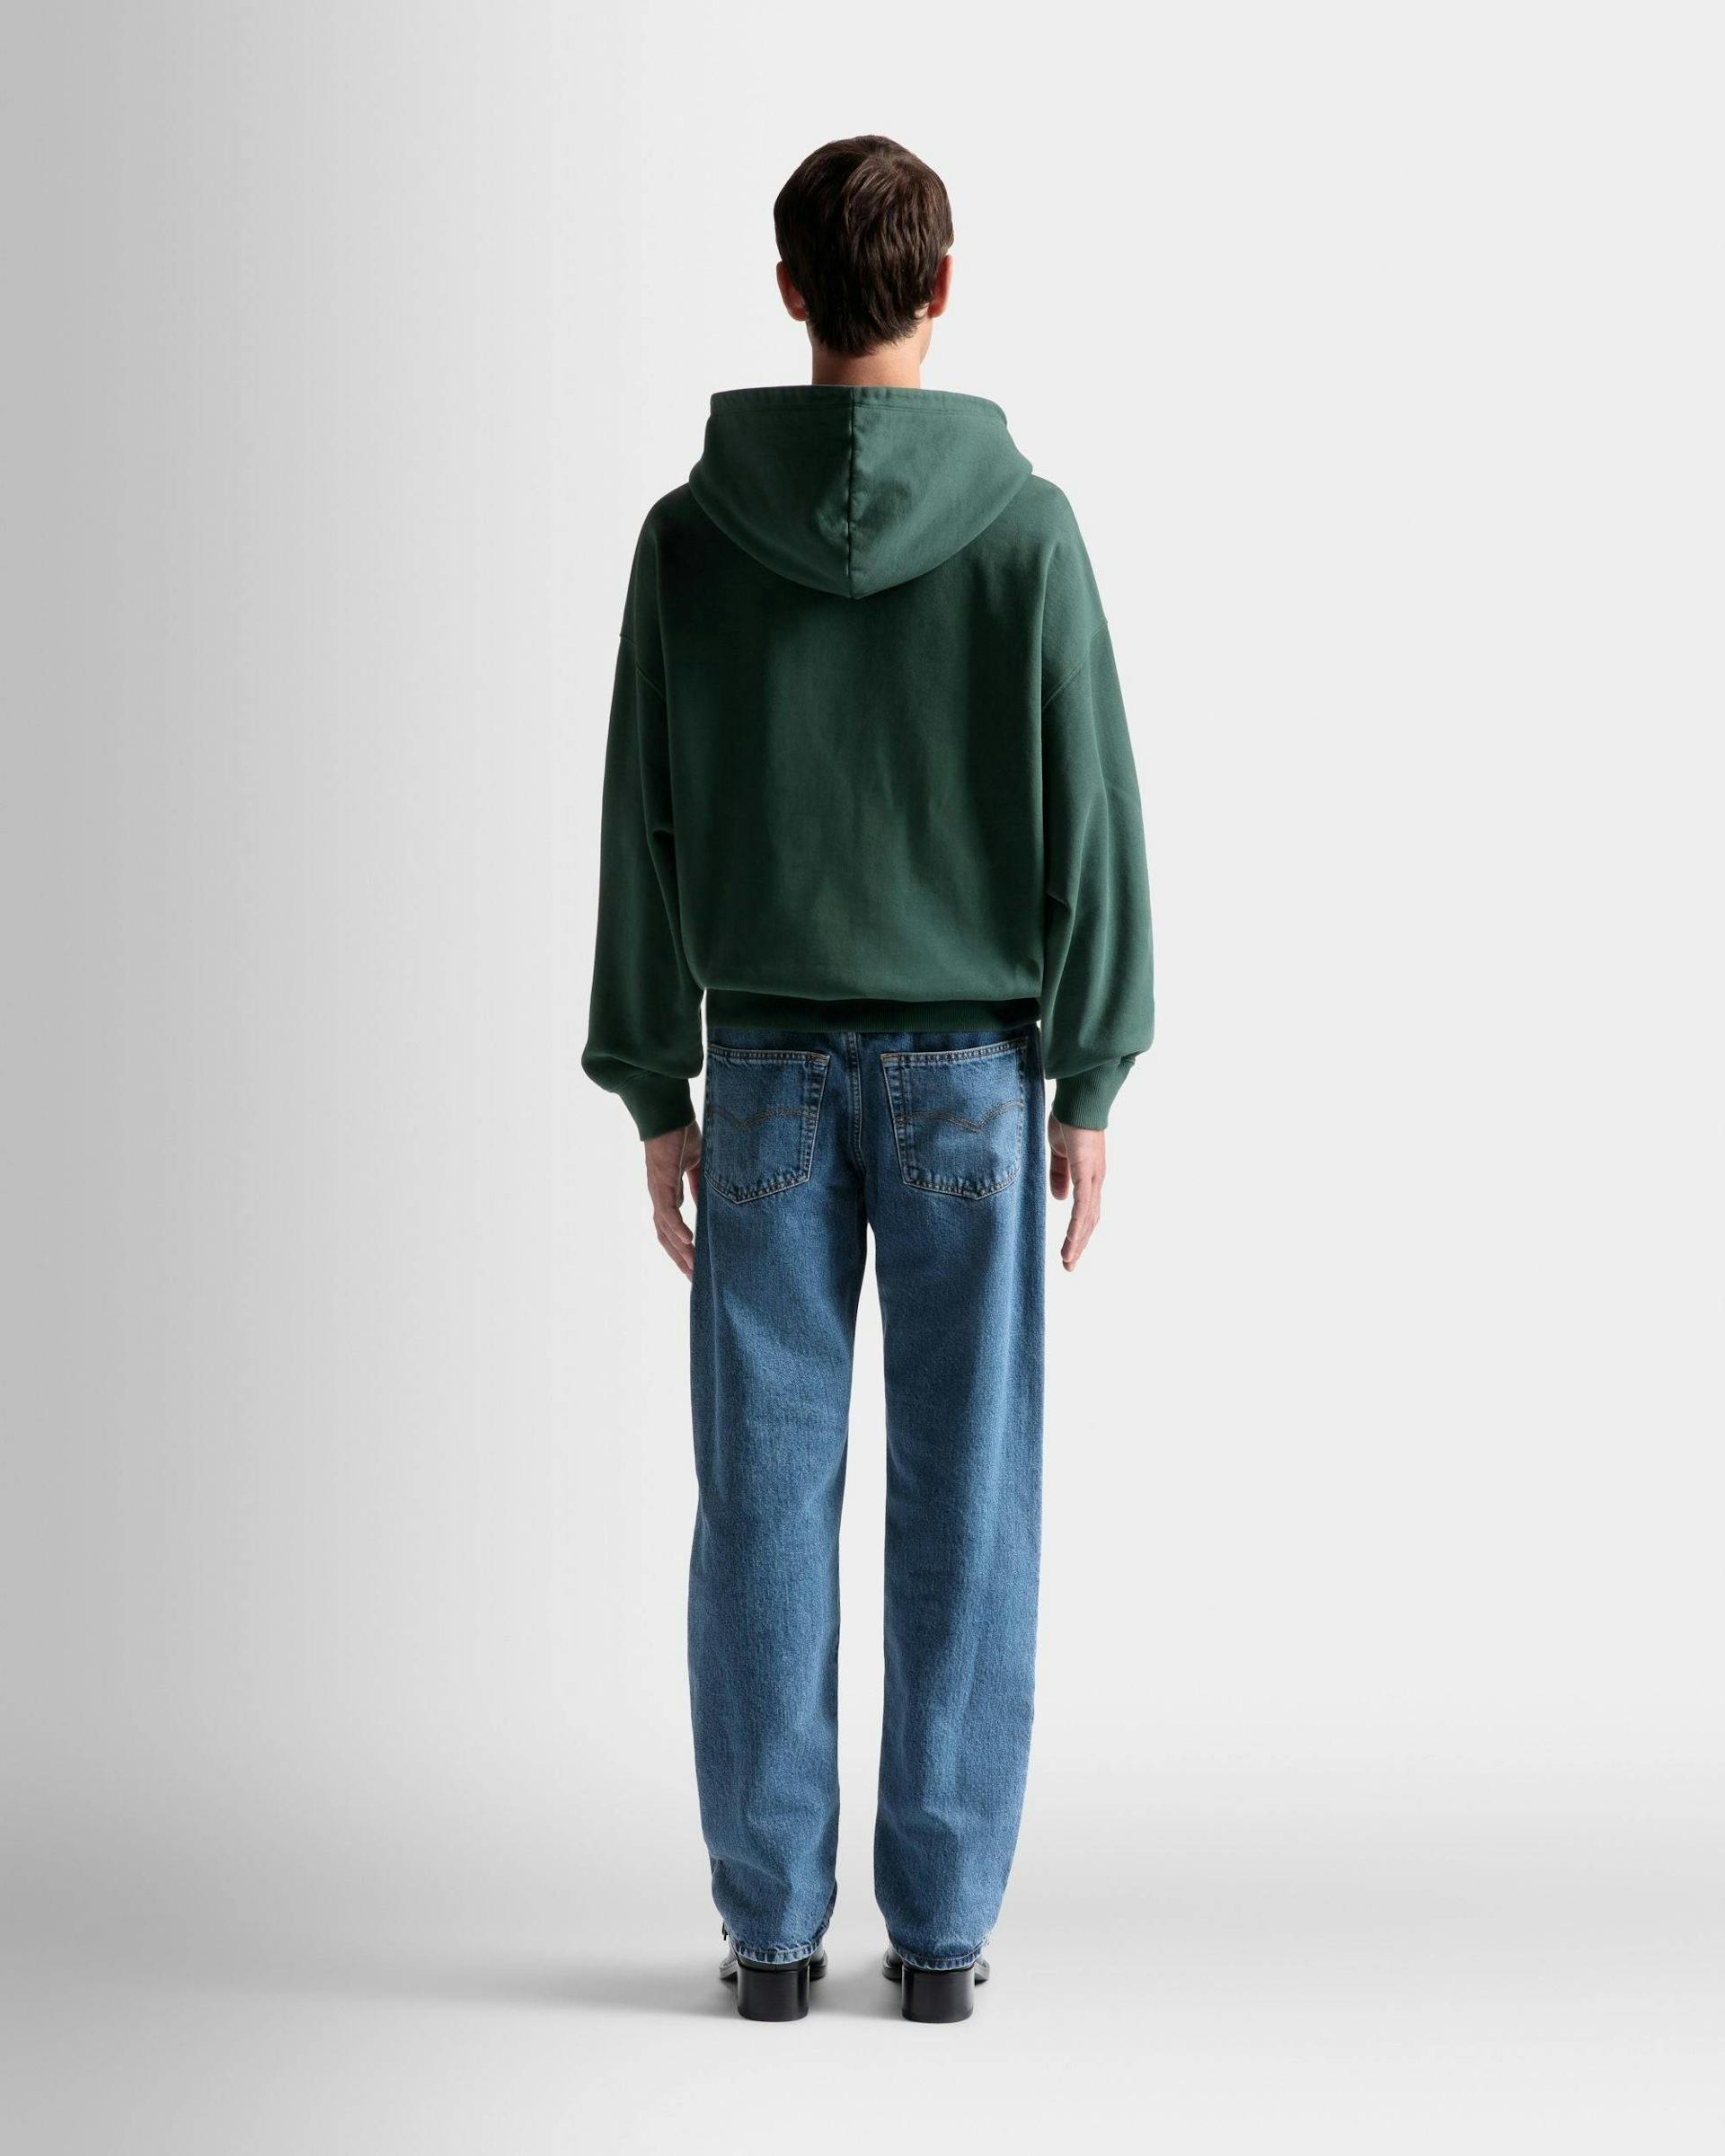 Men's Foiled Hooded Sweatshirt In Kelly Green Cotton | Bally | On Model Back